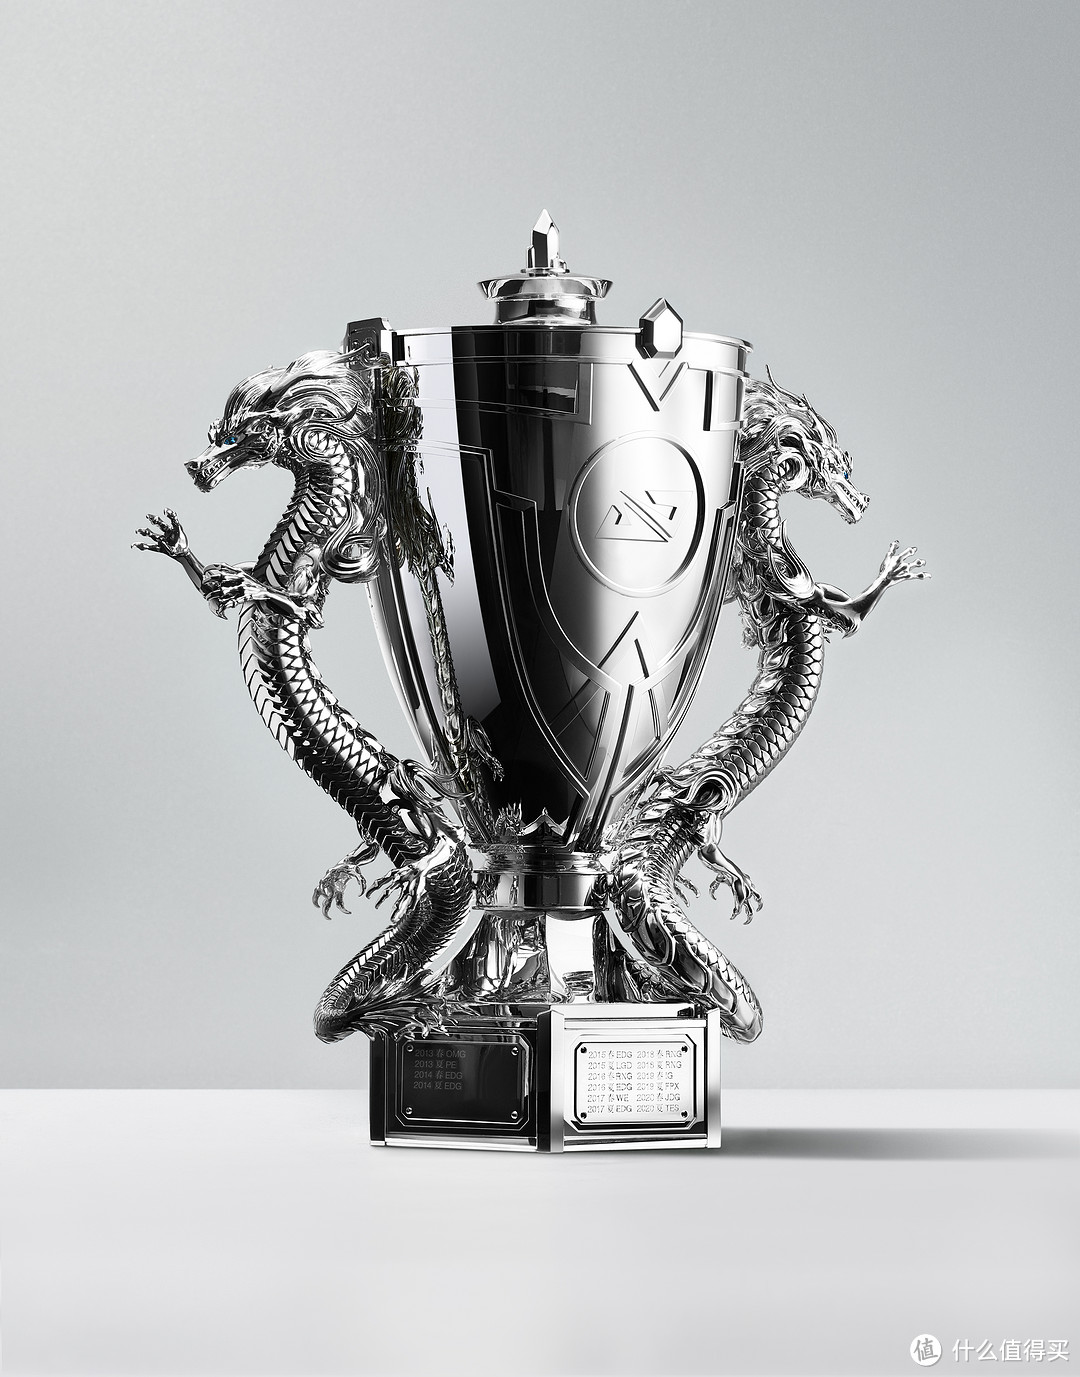 由蒂芙尼匠心铸造的英雄联盟职业联赛冠军奖杯“银龙杯”